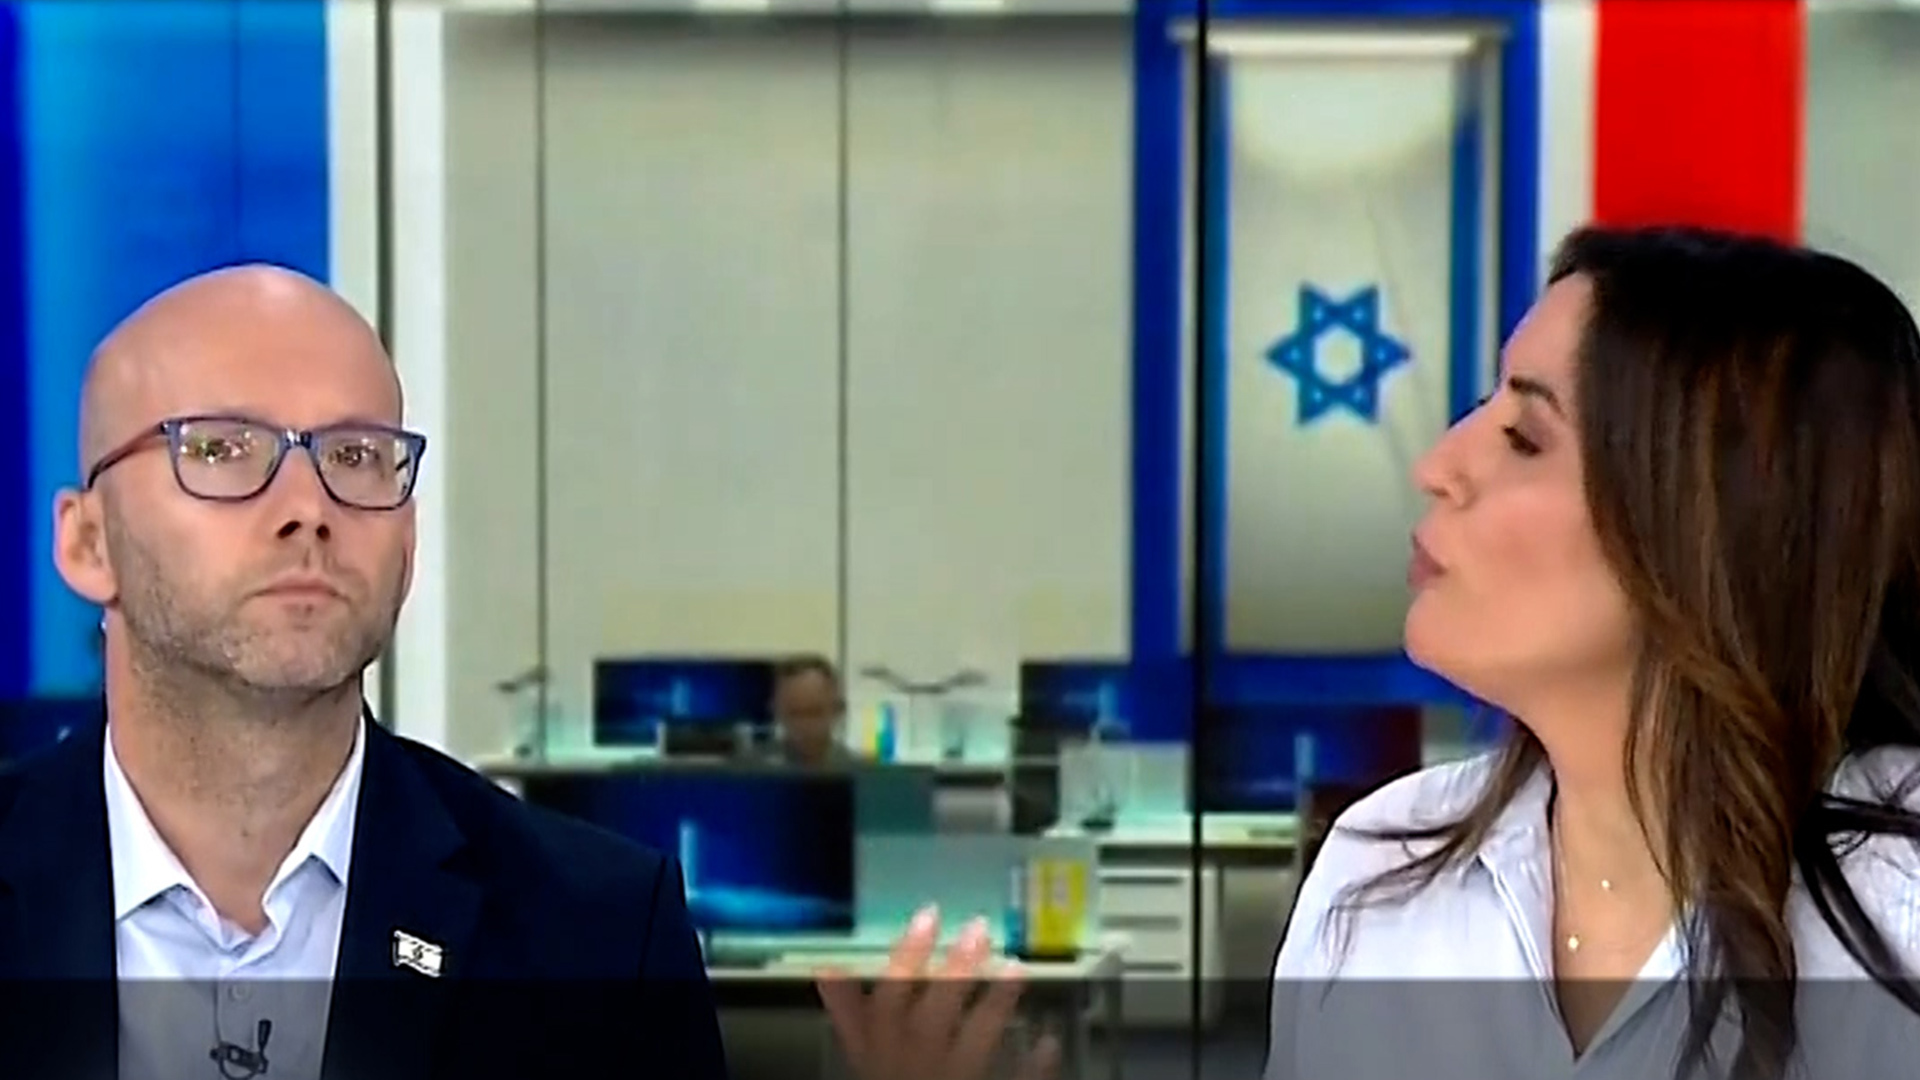 الإعلام الإسرائيلي: نواجه مشكلة انعدام الثقة بالجيش وإسرائيل لم تعد آمنة لليهود | أخبار البرامج – البوكس نيوز